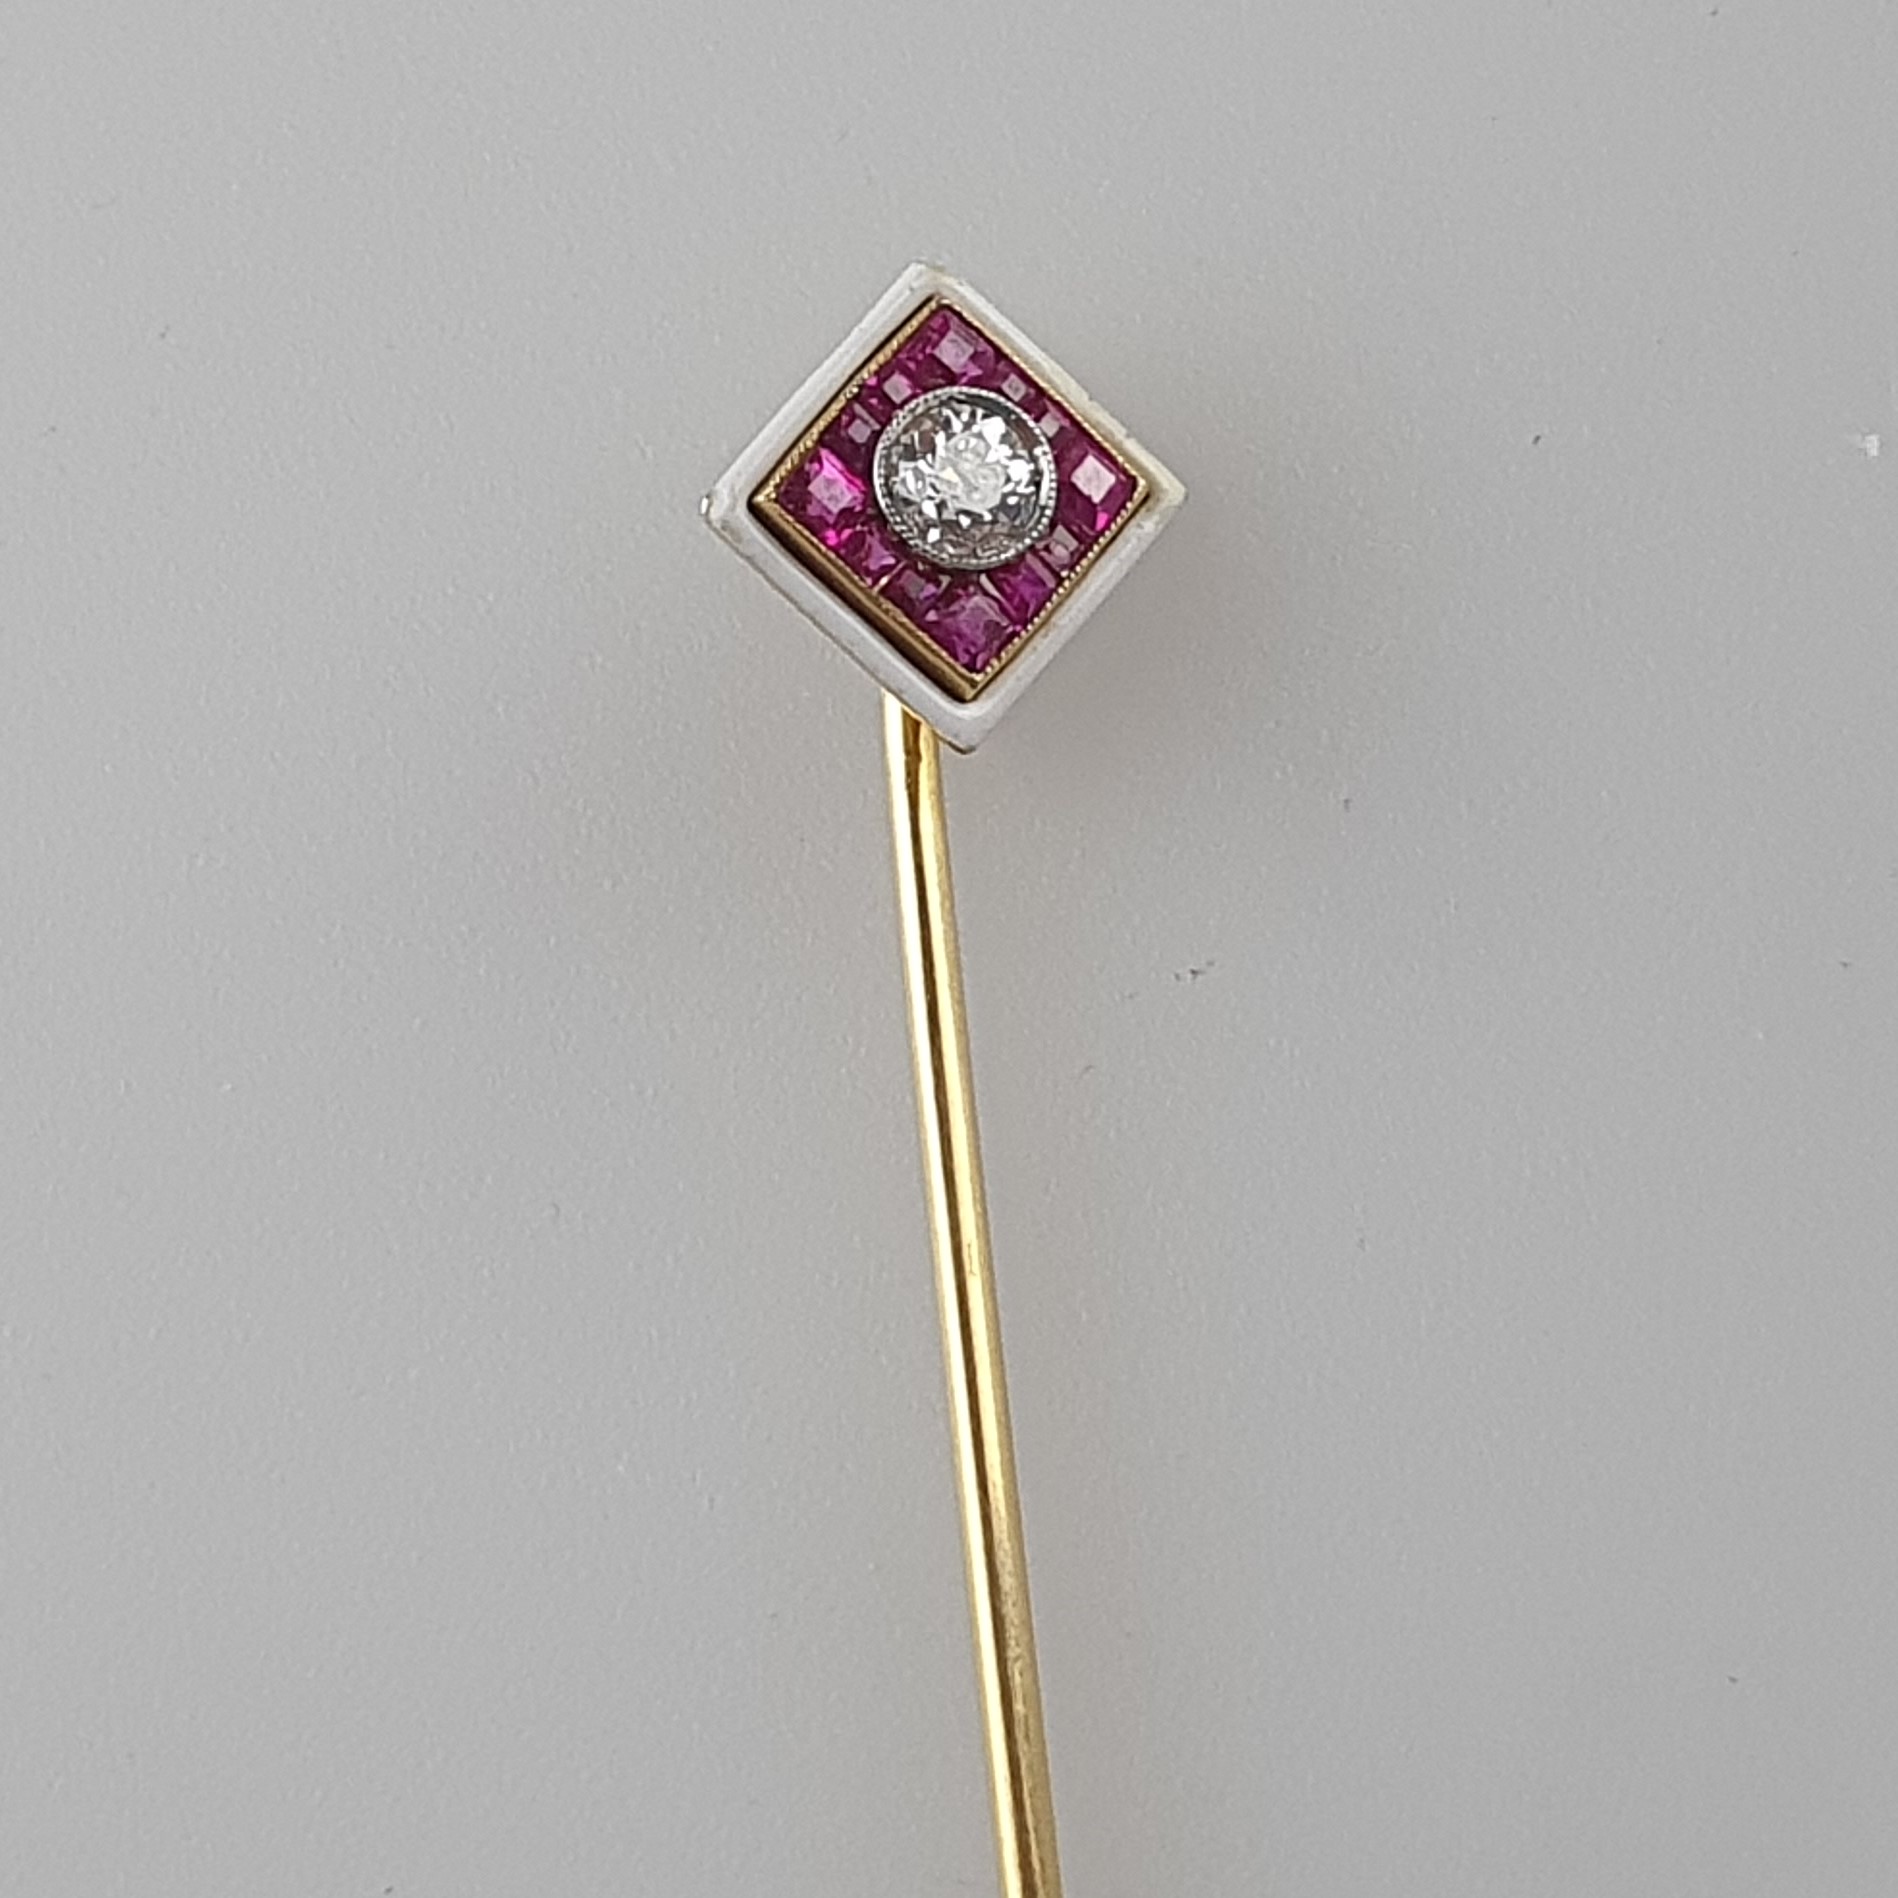 Emaillierte Krawattennadel mit Diamantsolitär - 14 Kt.-Gelbgold (585/000), rautenförmiger Kopf mitt